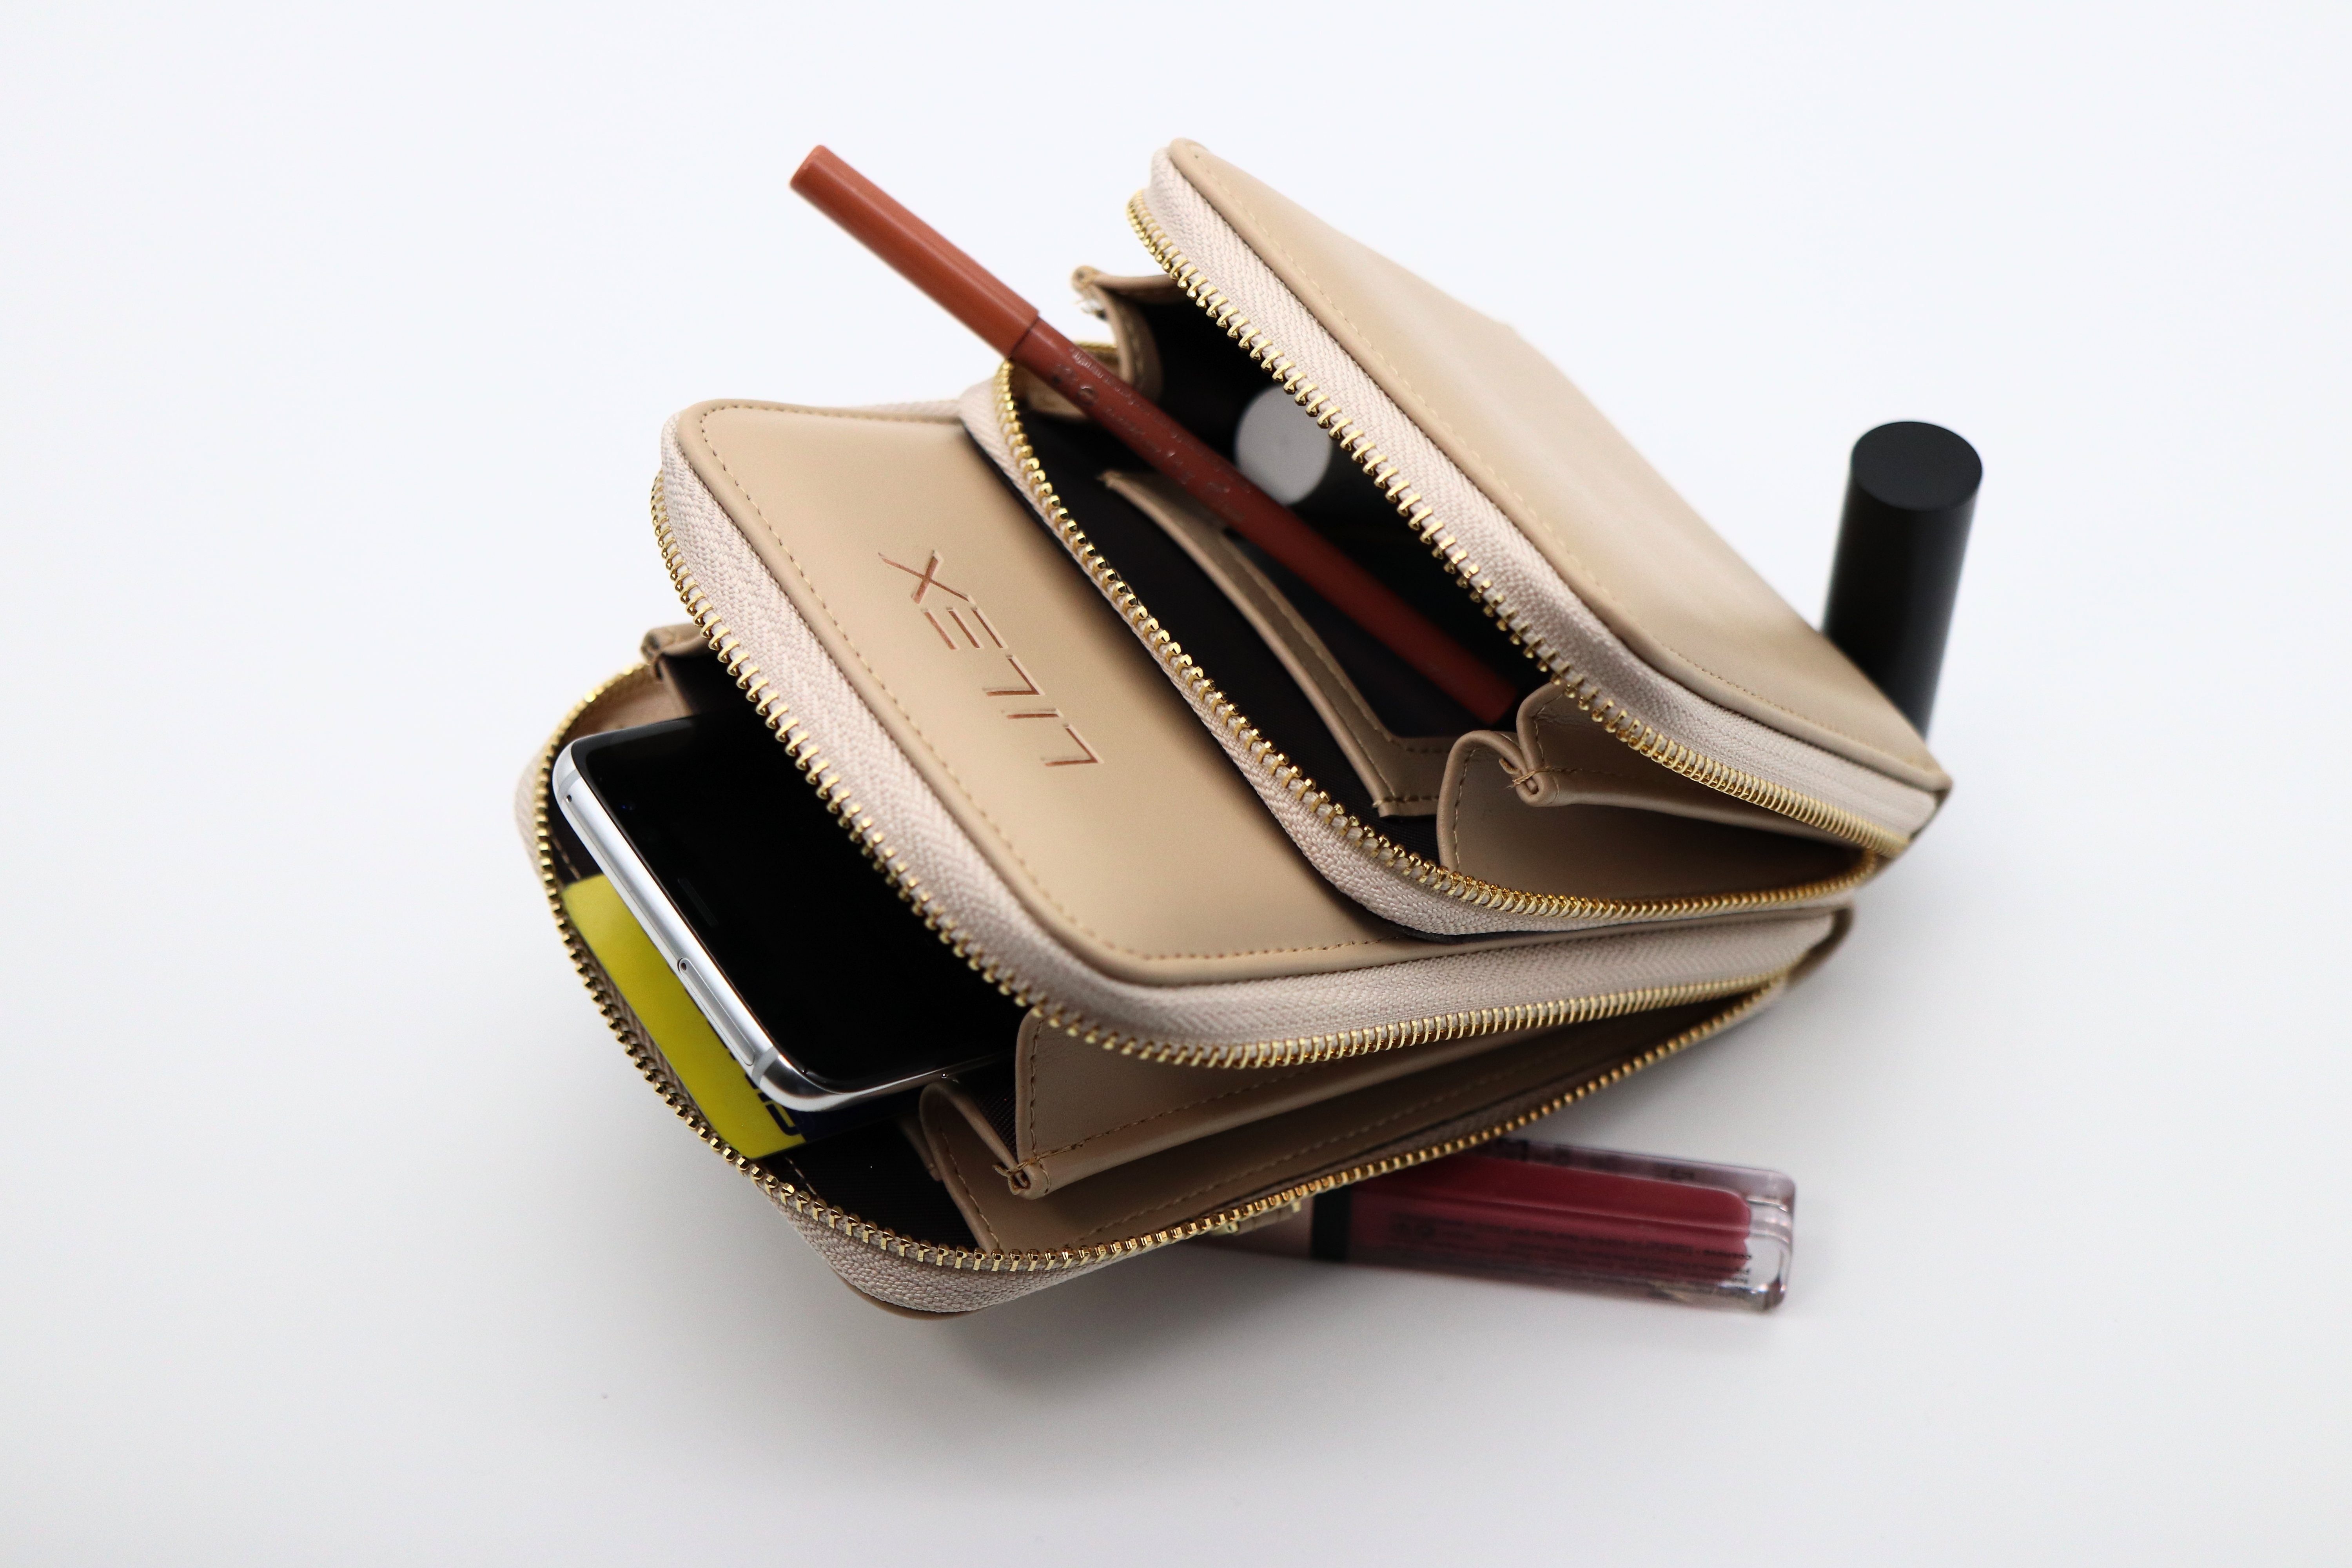 Damen Umhängetaschen Lilex Umhängetasche Mini Tasche zum Umhängen aus Leder, große Brieftasche, Geldbörse mit Kartenfächern, ver